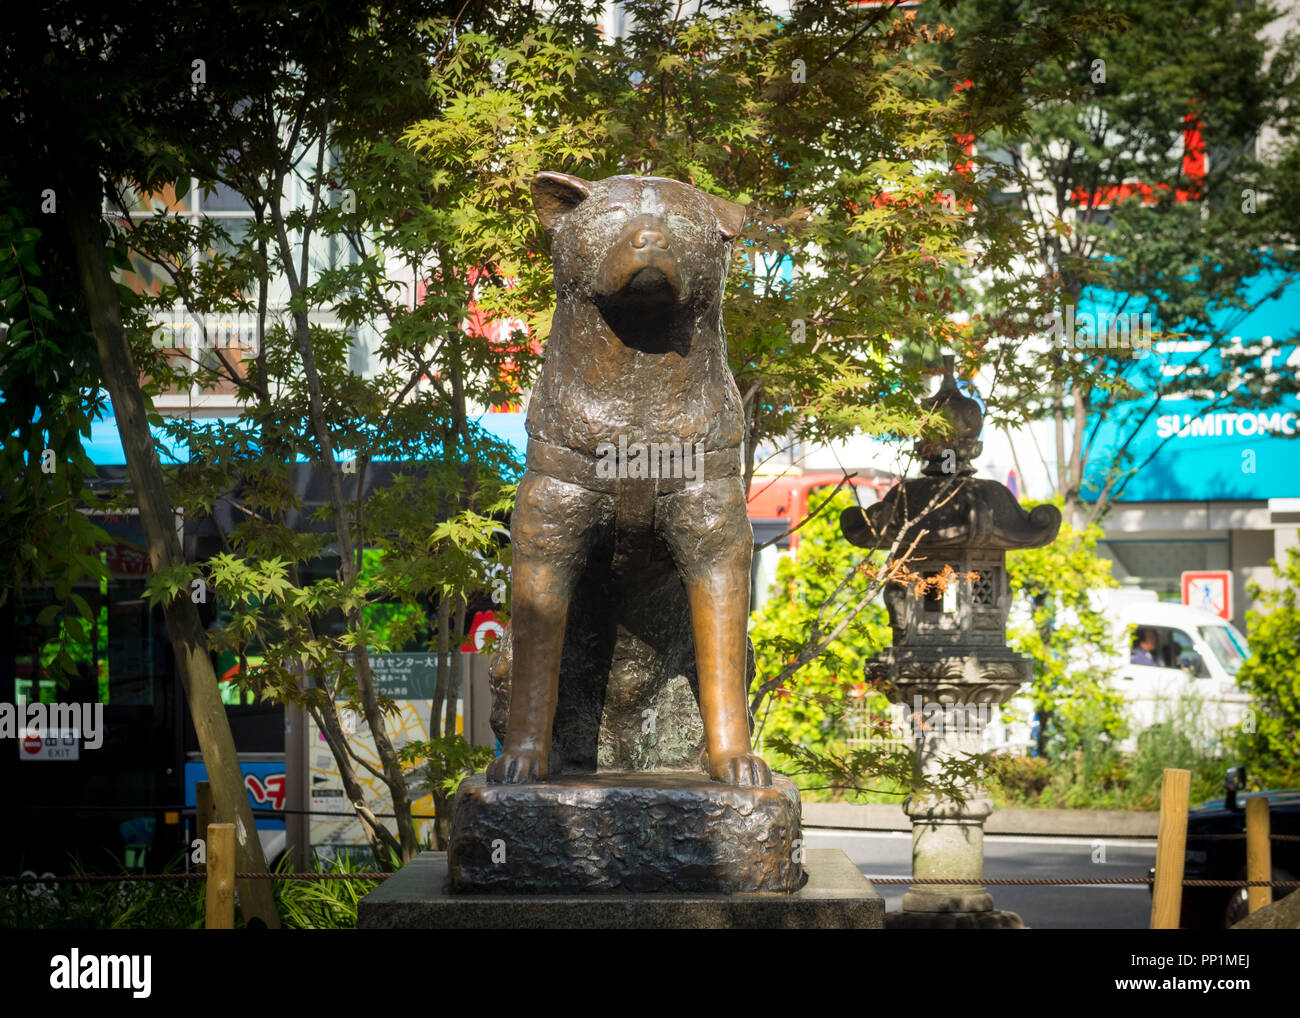 Eine Statue des berühmten Hund Hachiko, außerhalb von Shibuya Bahnhof in Shibuya, Tokio, Japan. Stockfoto